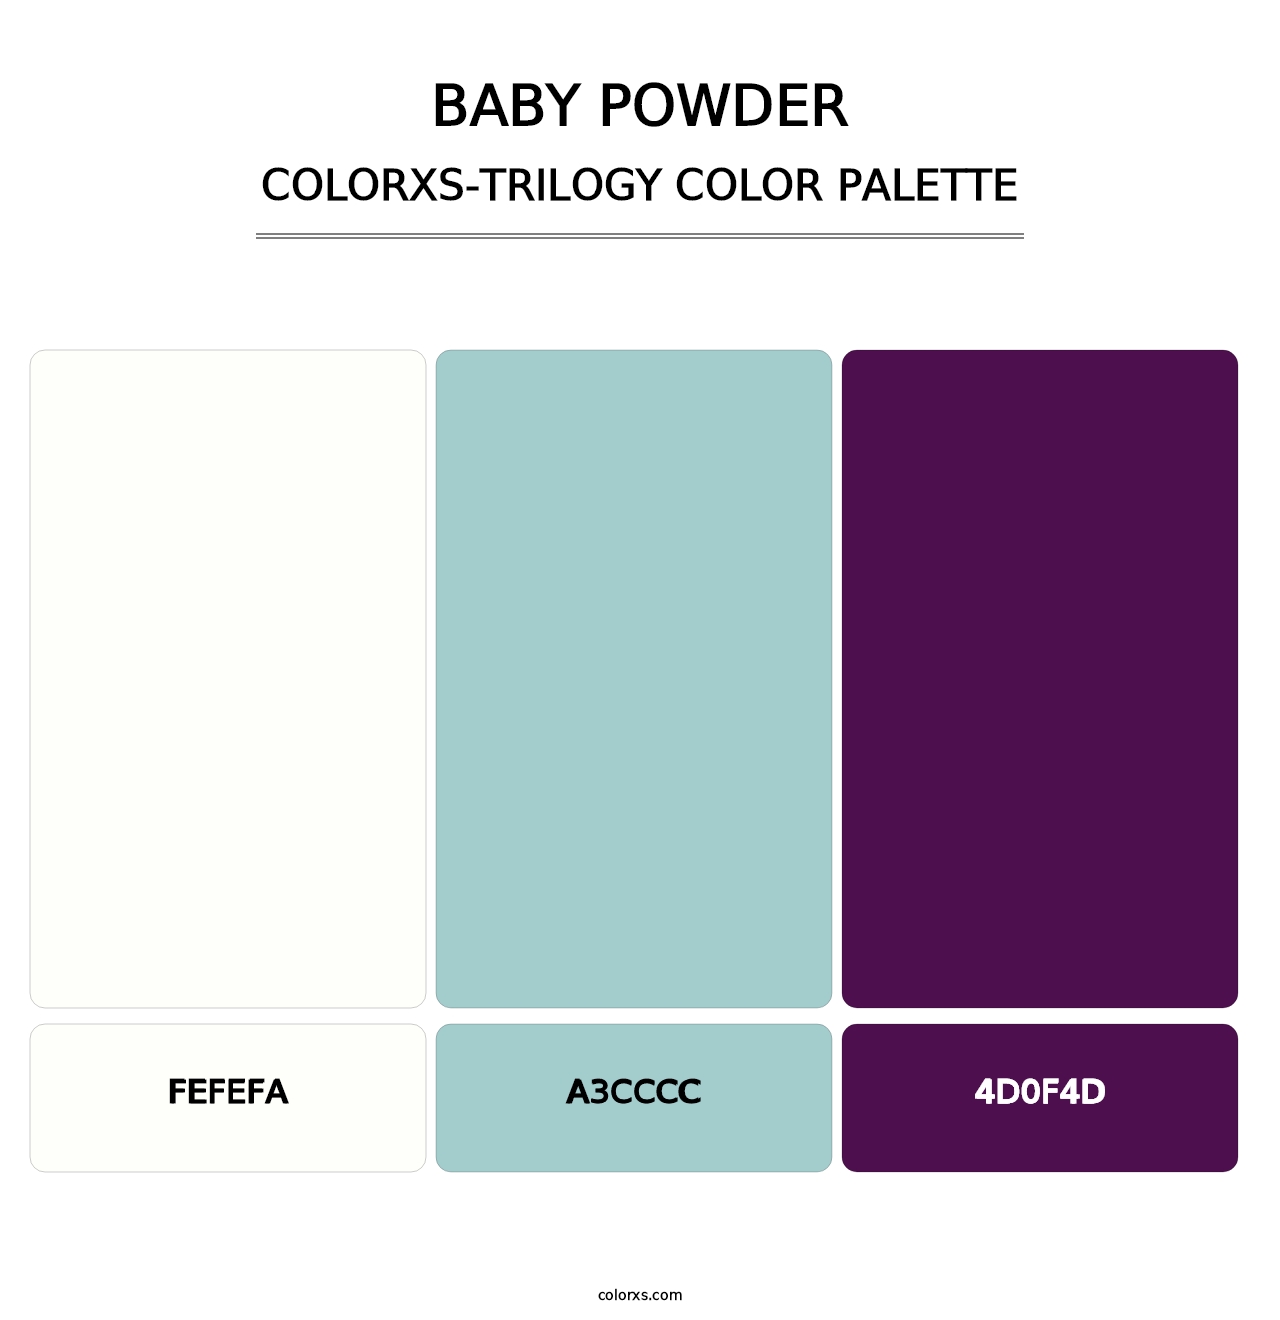 Baby Powder - Colorxs Trilogy Palette